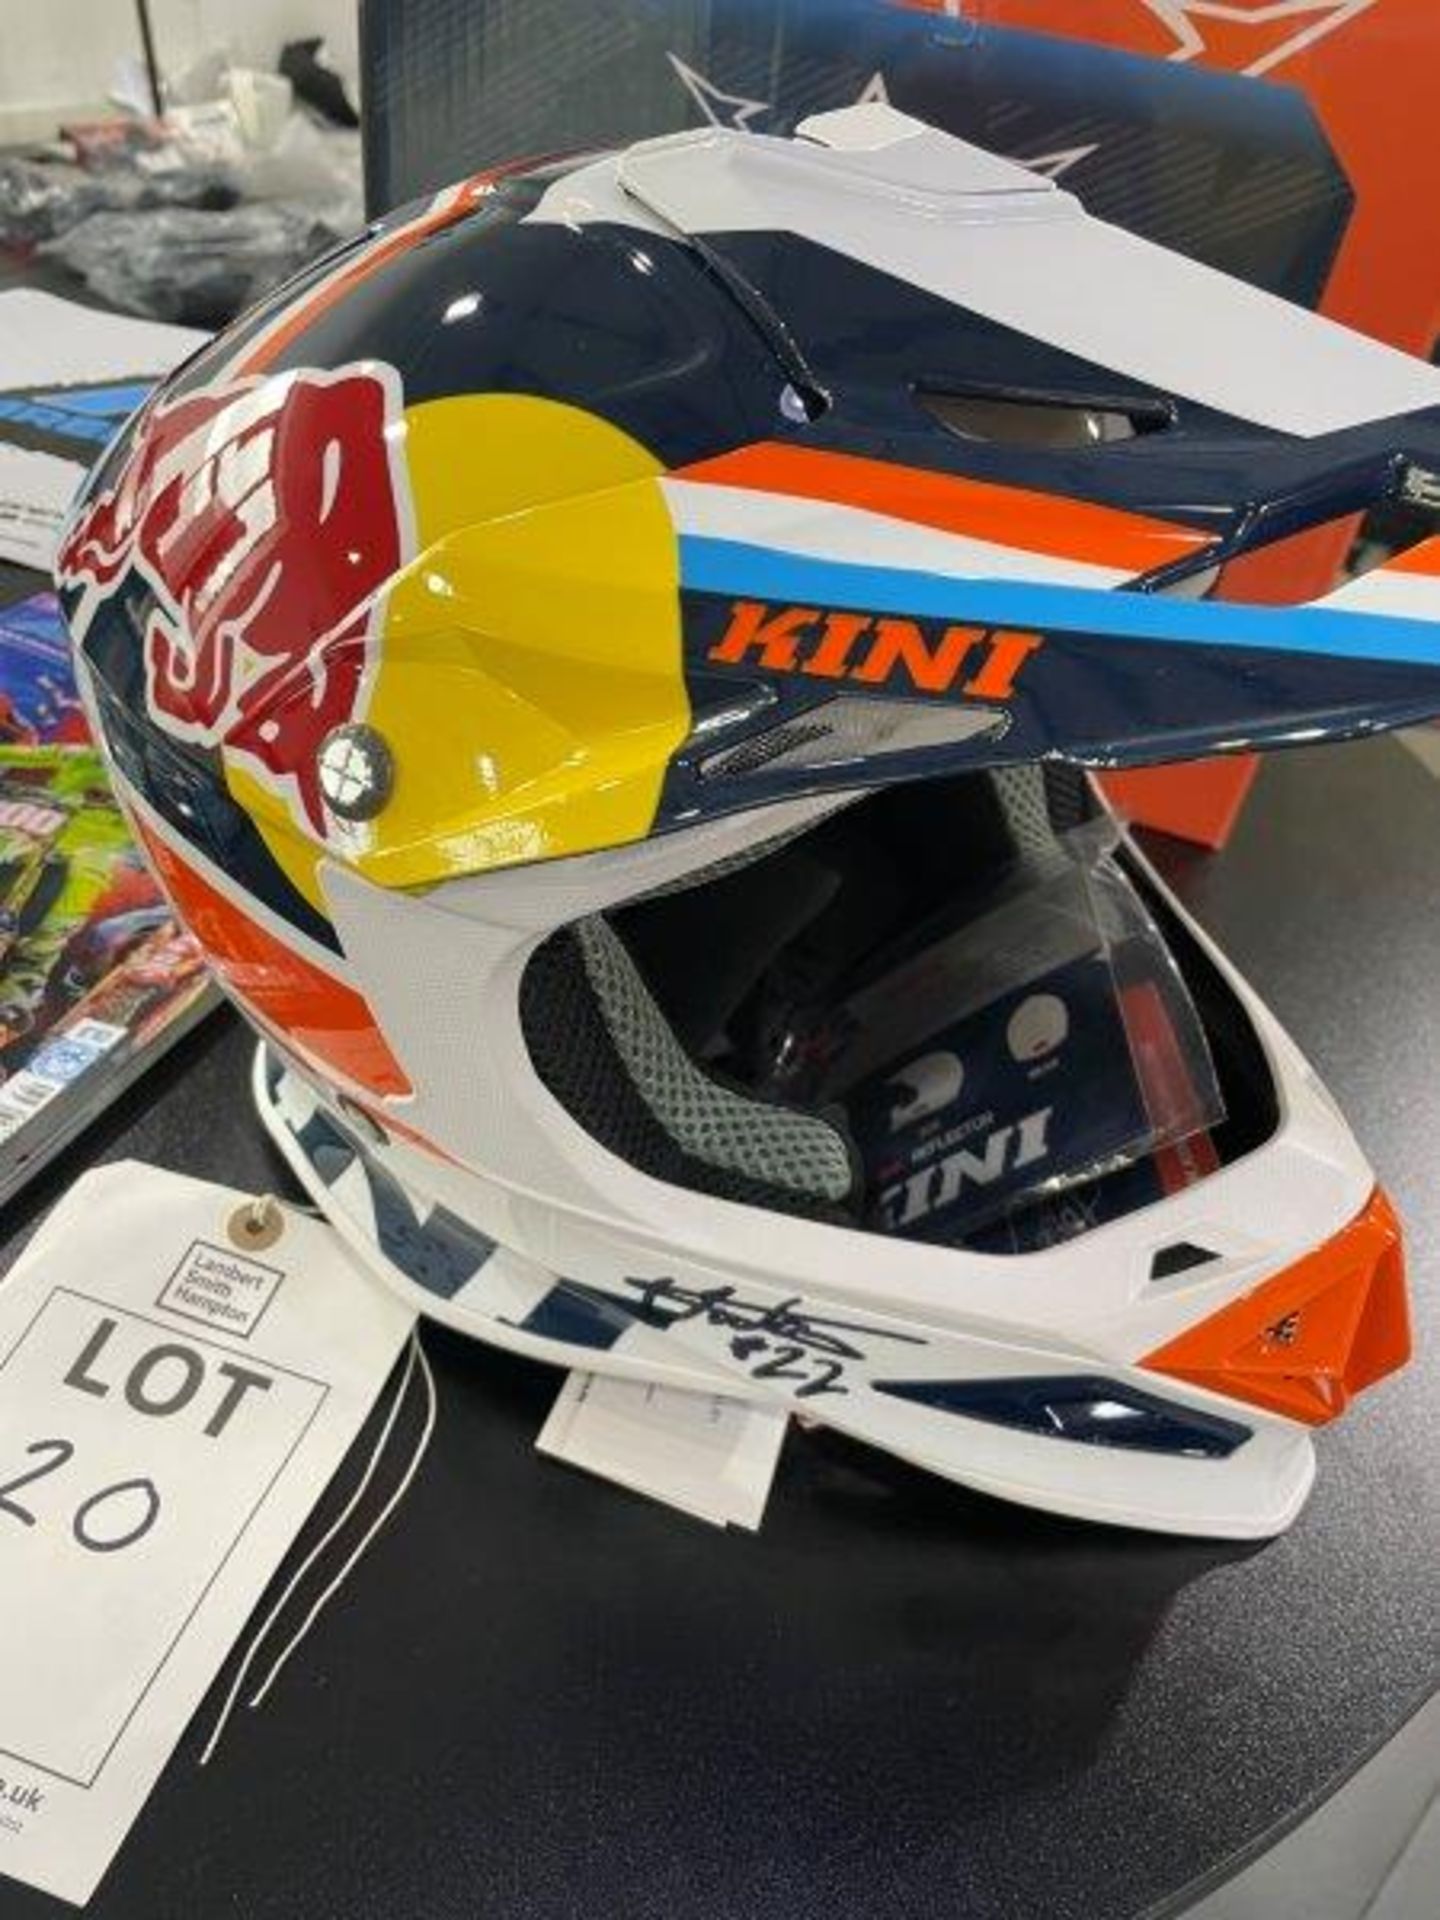 KINI Redbull Autographed Competition Motorbike Helmet - Image 2 of 15